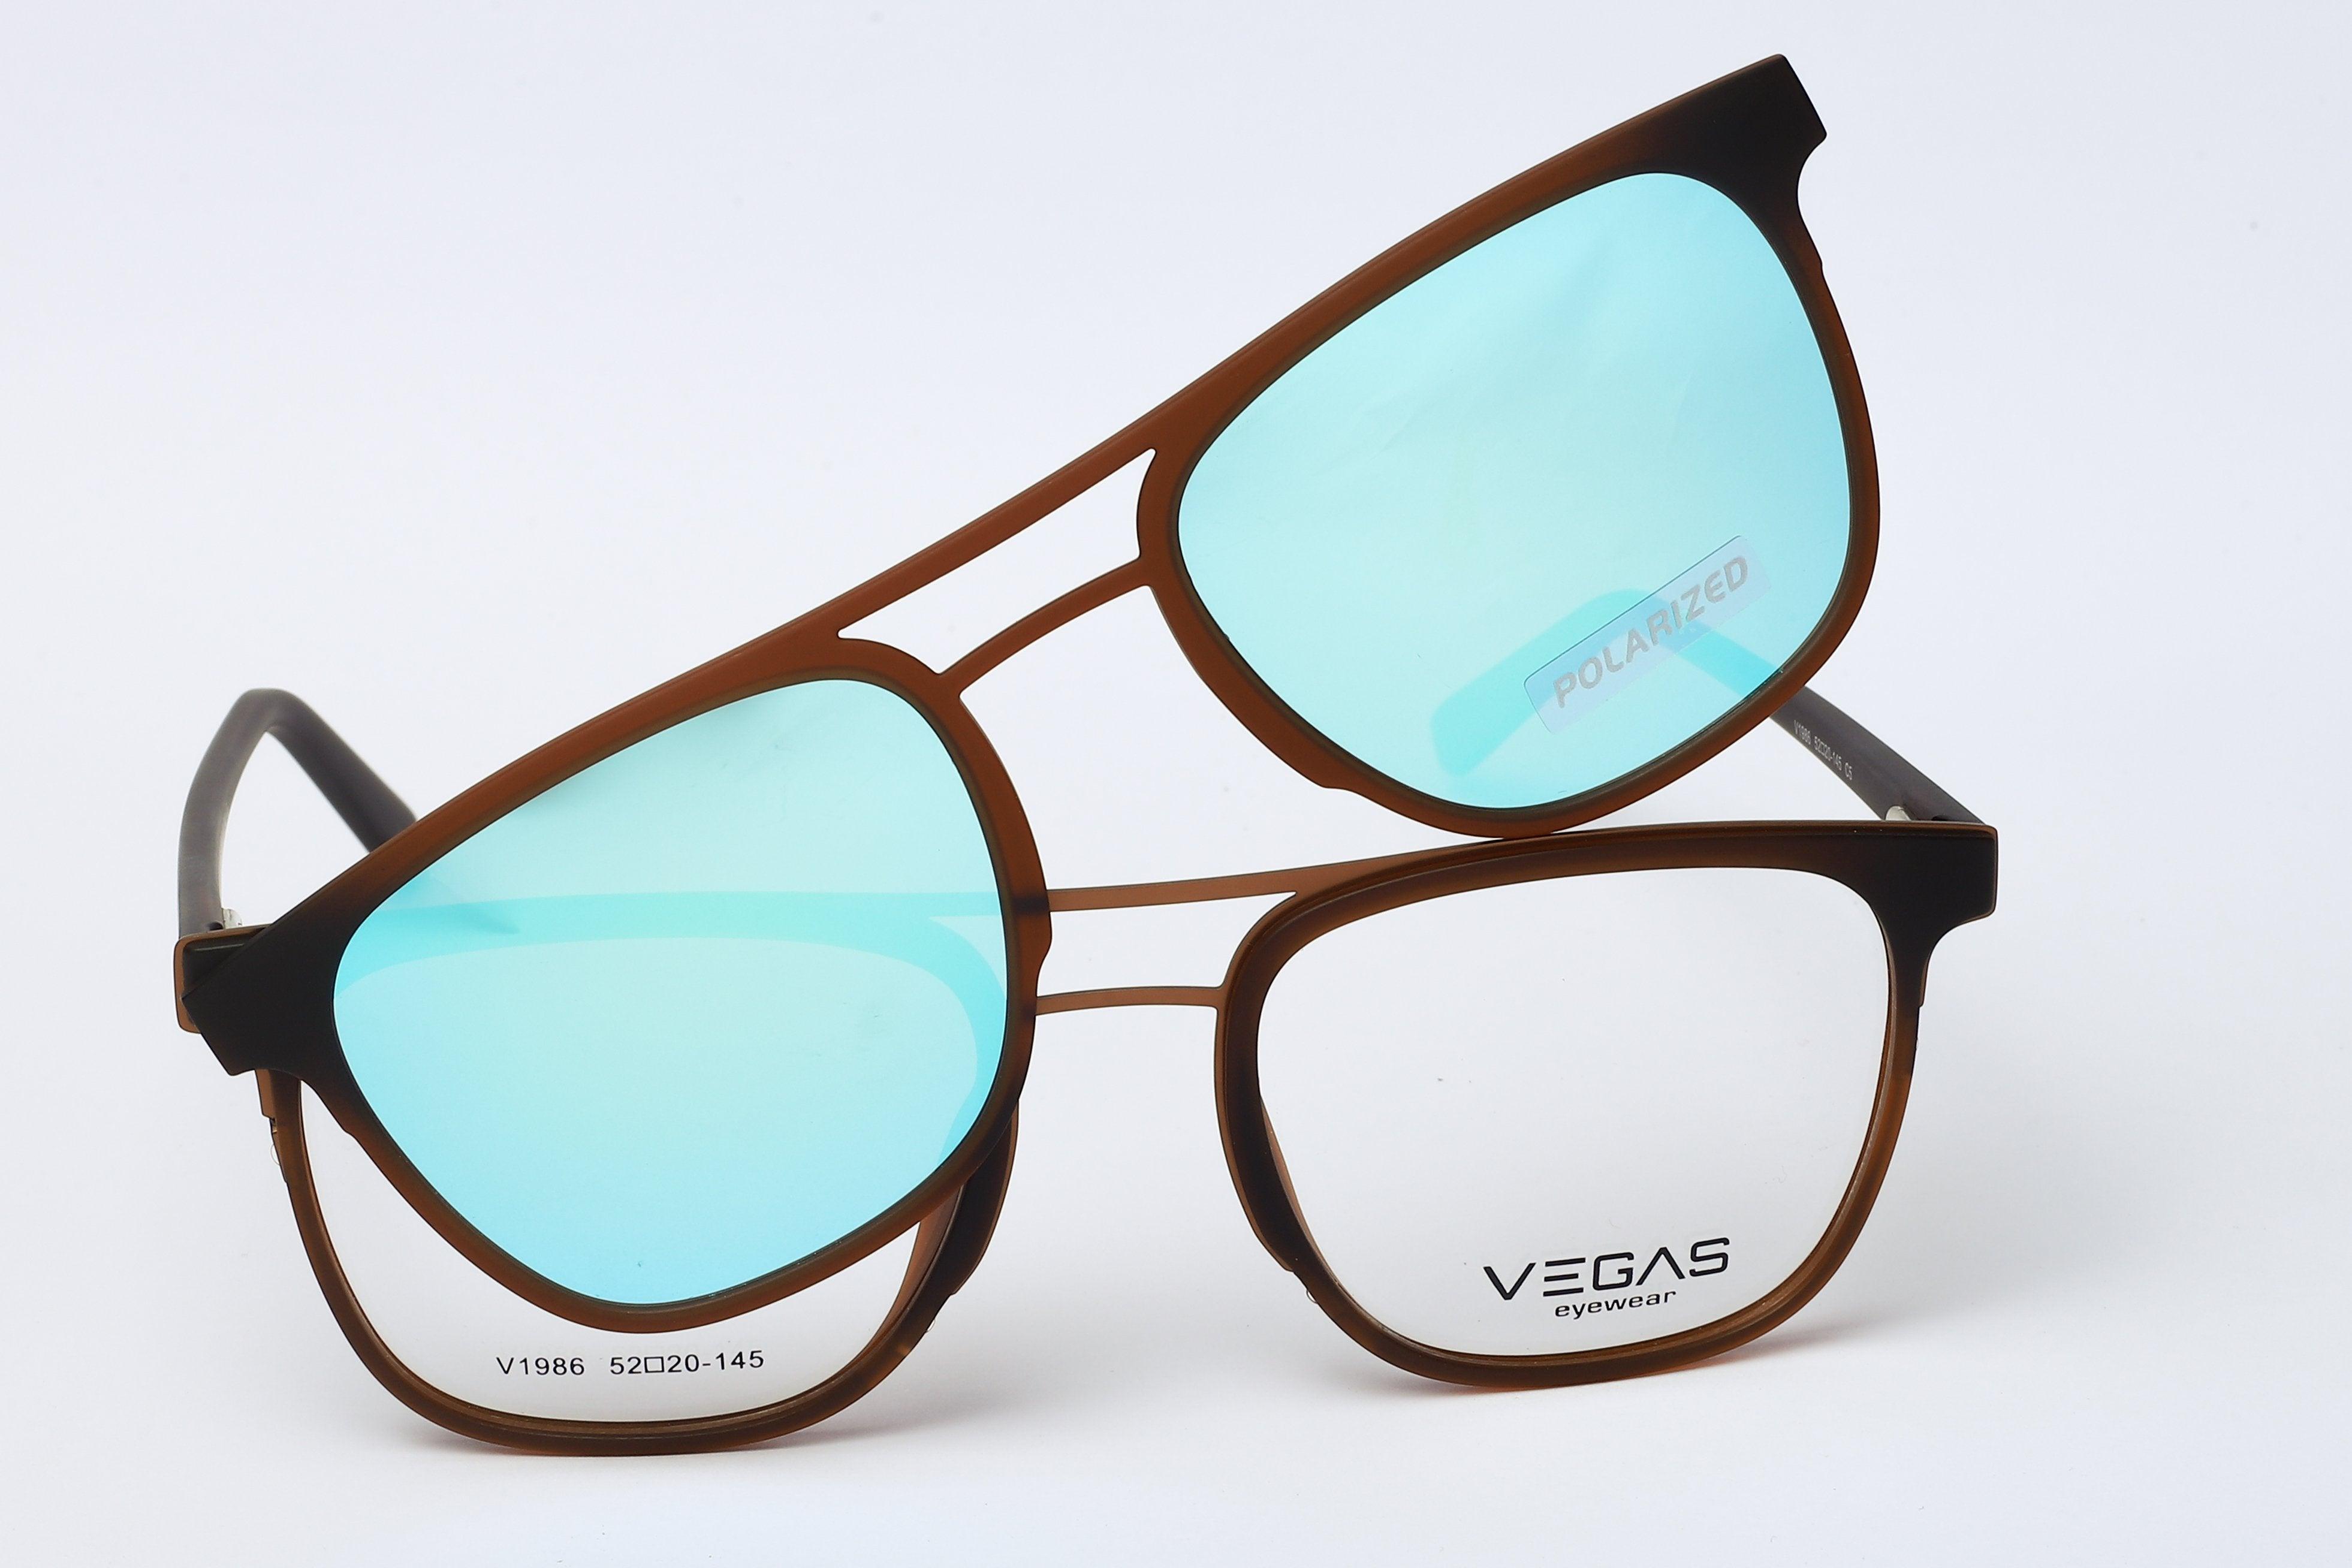 Vegas V1986 - COC Eyewear